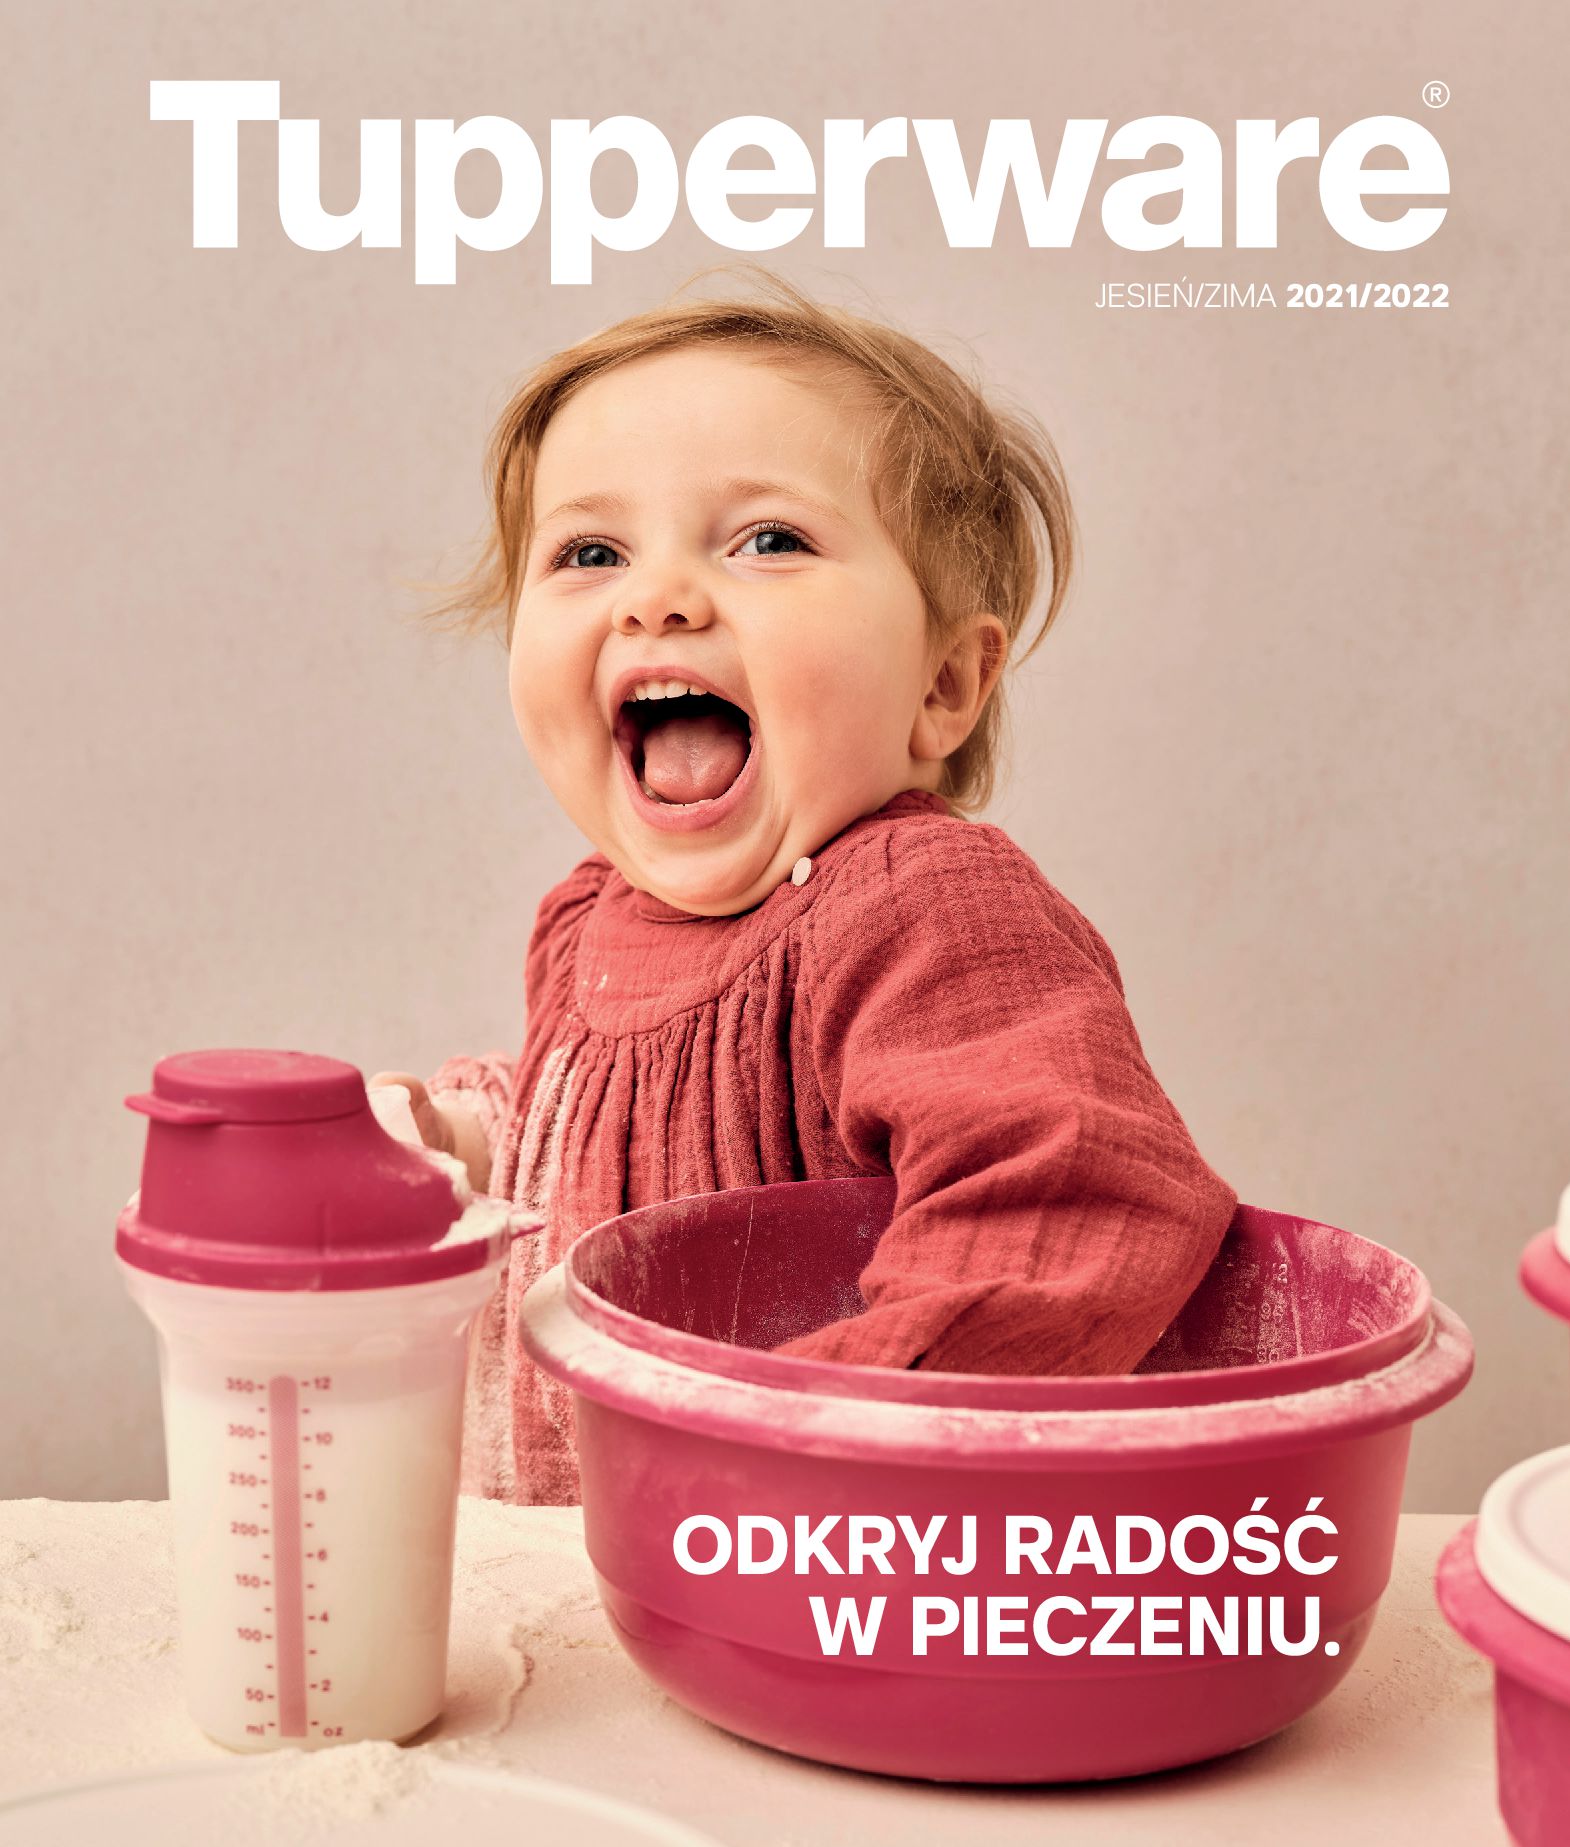 Gazetka Tupperware: Gazetka Tupperware - Katalog jesień/zima 2021-10-03 page-1